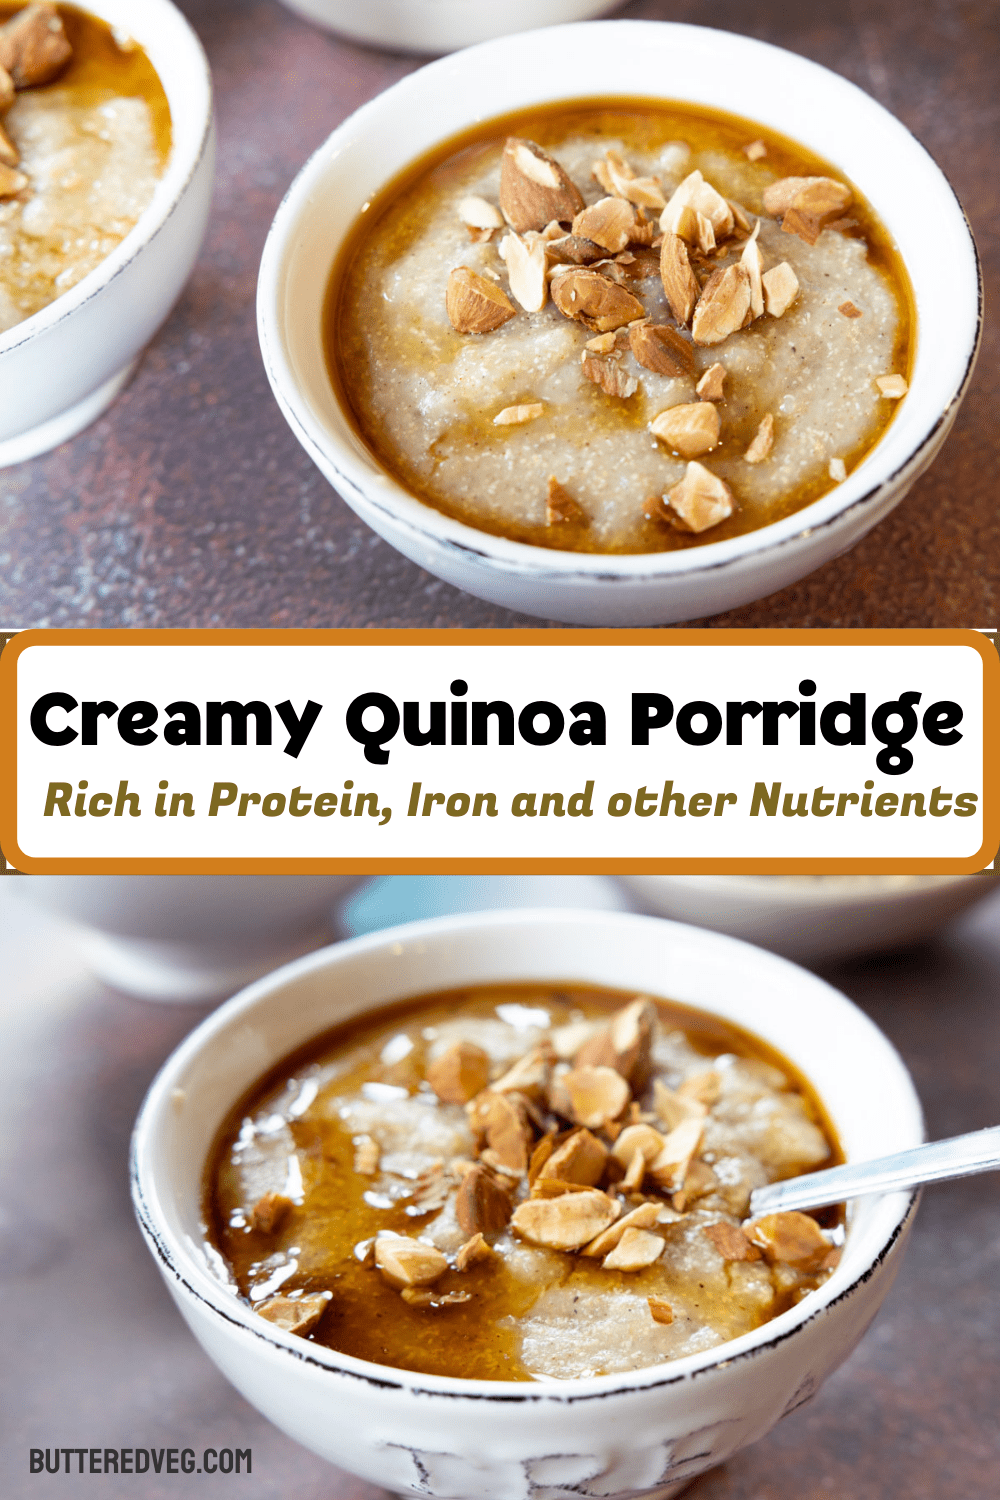 Cream of Quinoa Breakfast Porridge